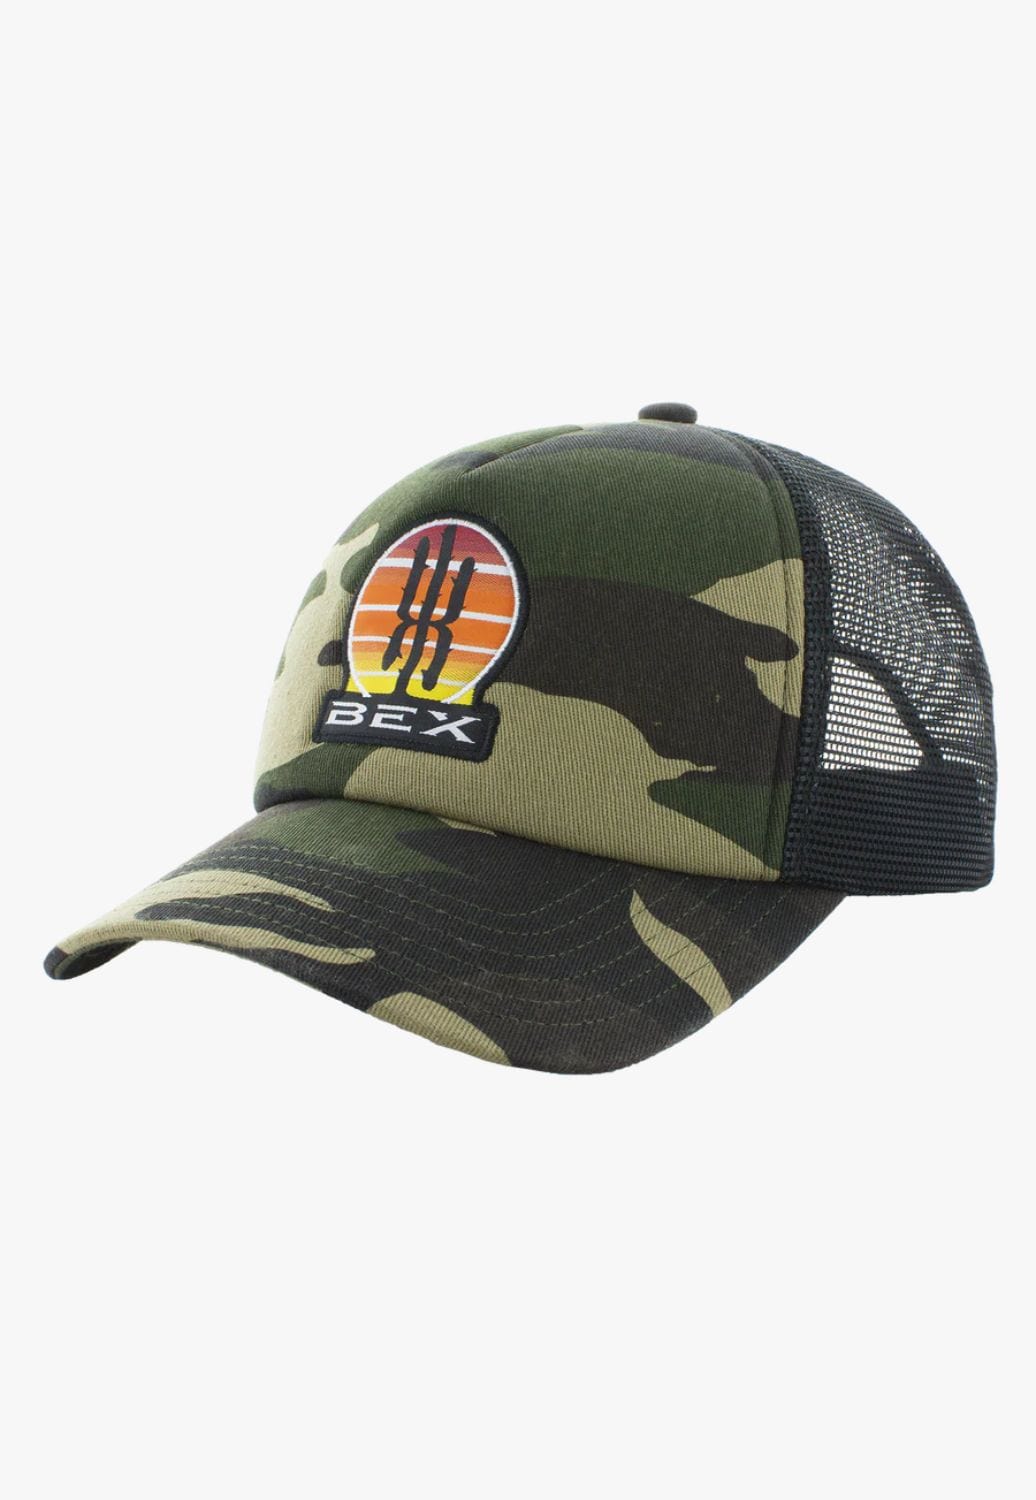 BEX HATS - Caps CAMO Bex Saguaro Cap